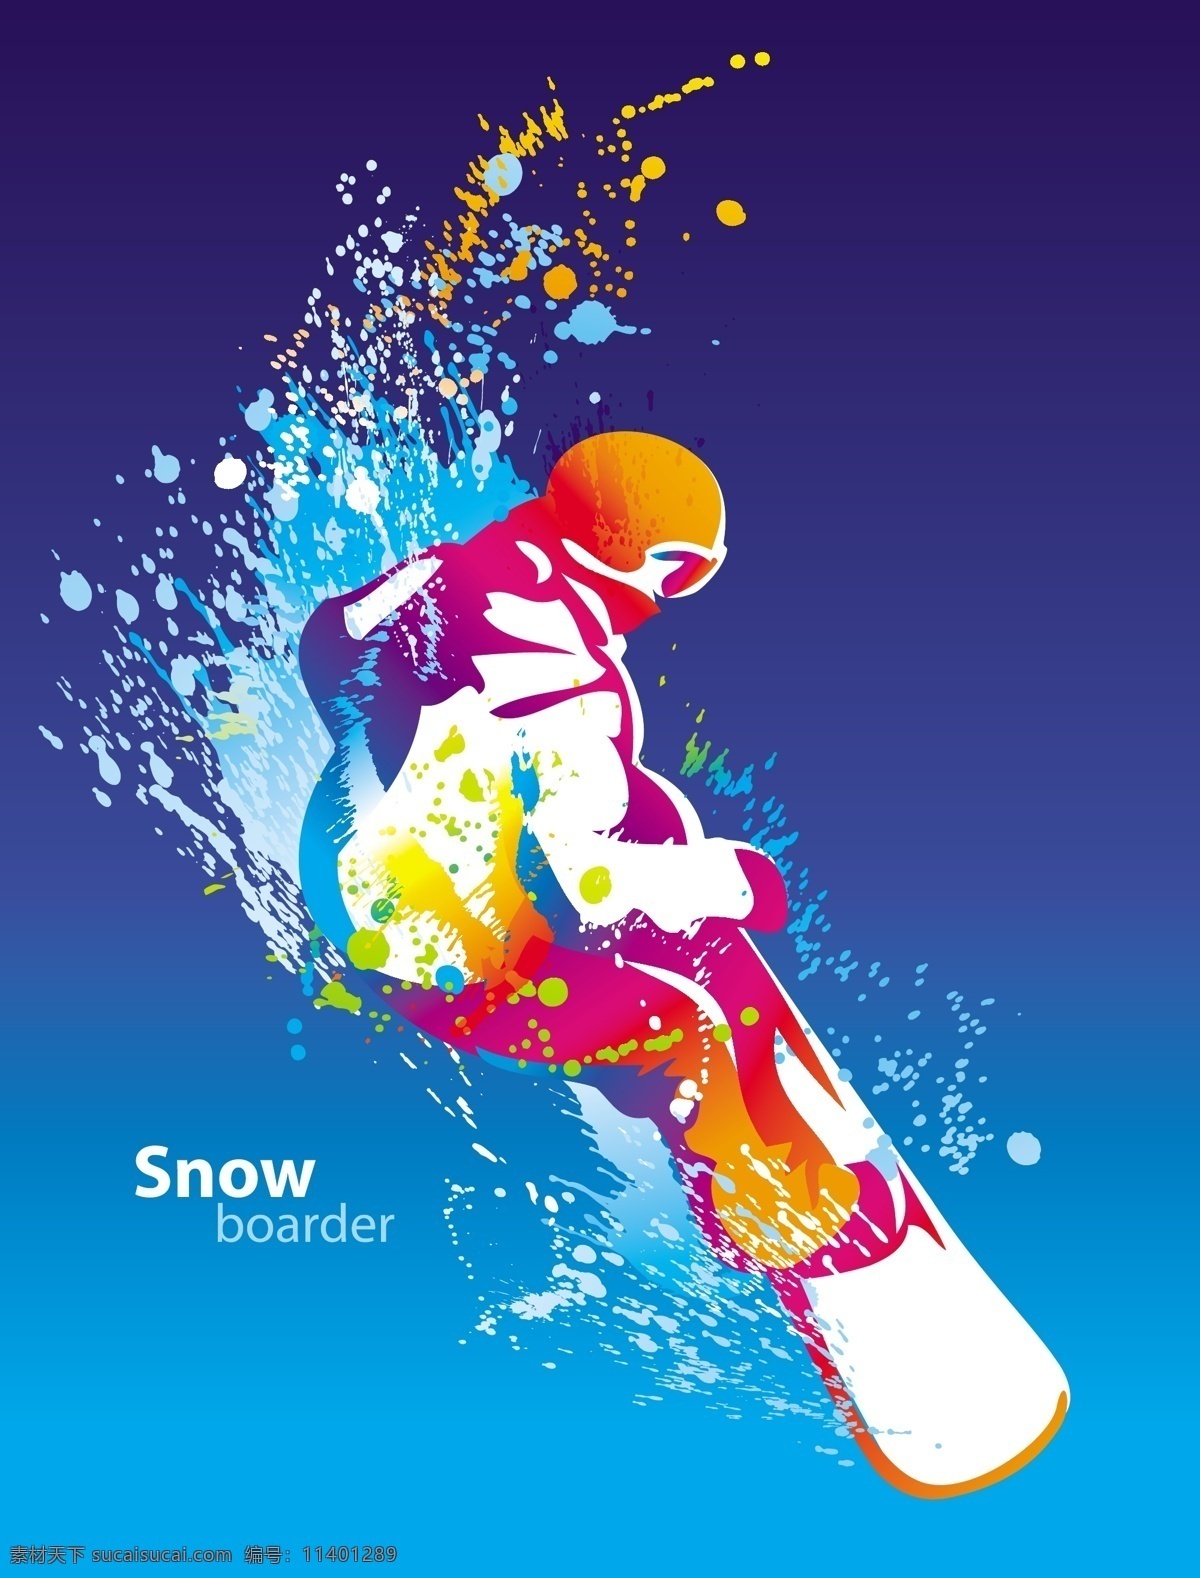 里约 奥运会 滑雪 冲浪 运动 运动人物剪影 海报 里约奥运海报 2016 里约奥运展板 奥运 展架 奥运会图片 奥运加油 奥运会广告 体育运动海报 蓝色